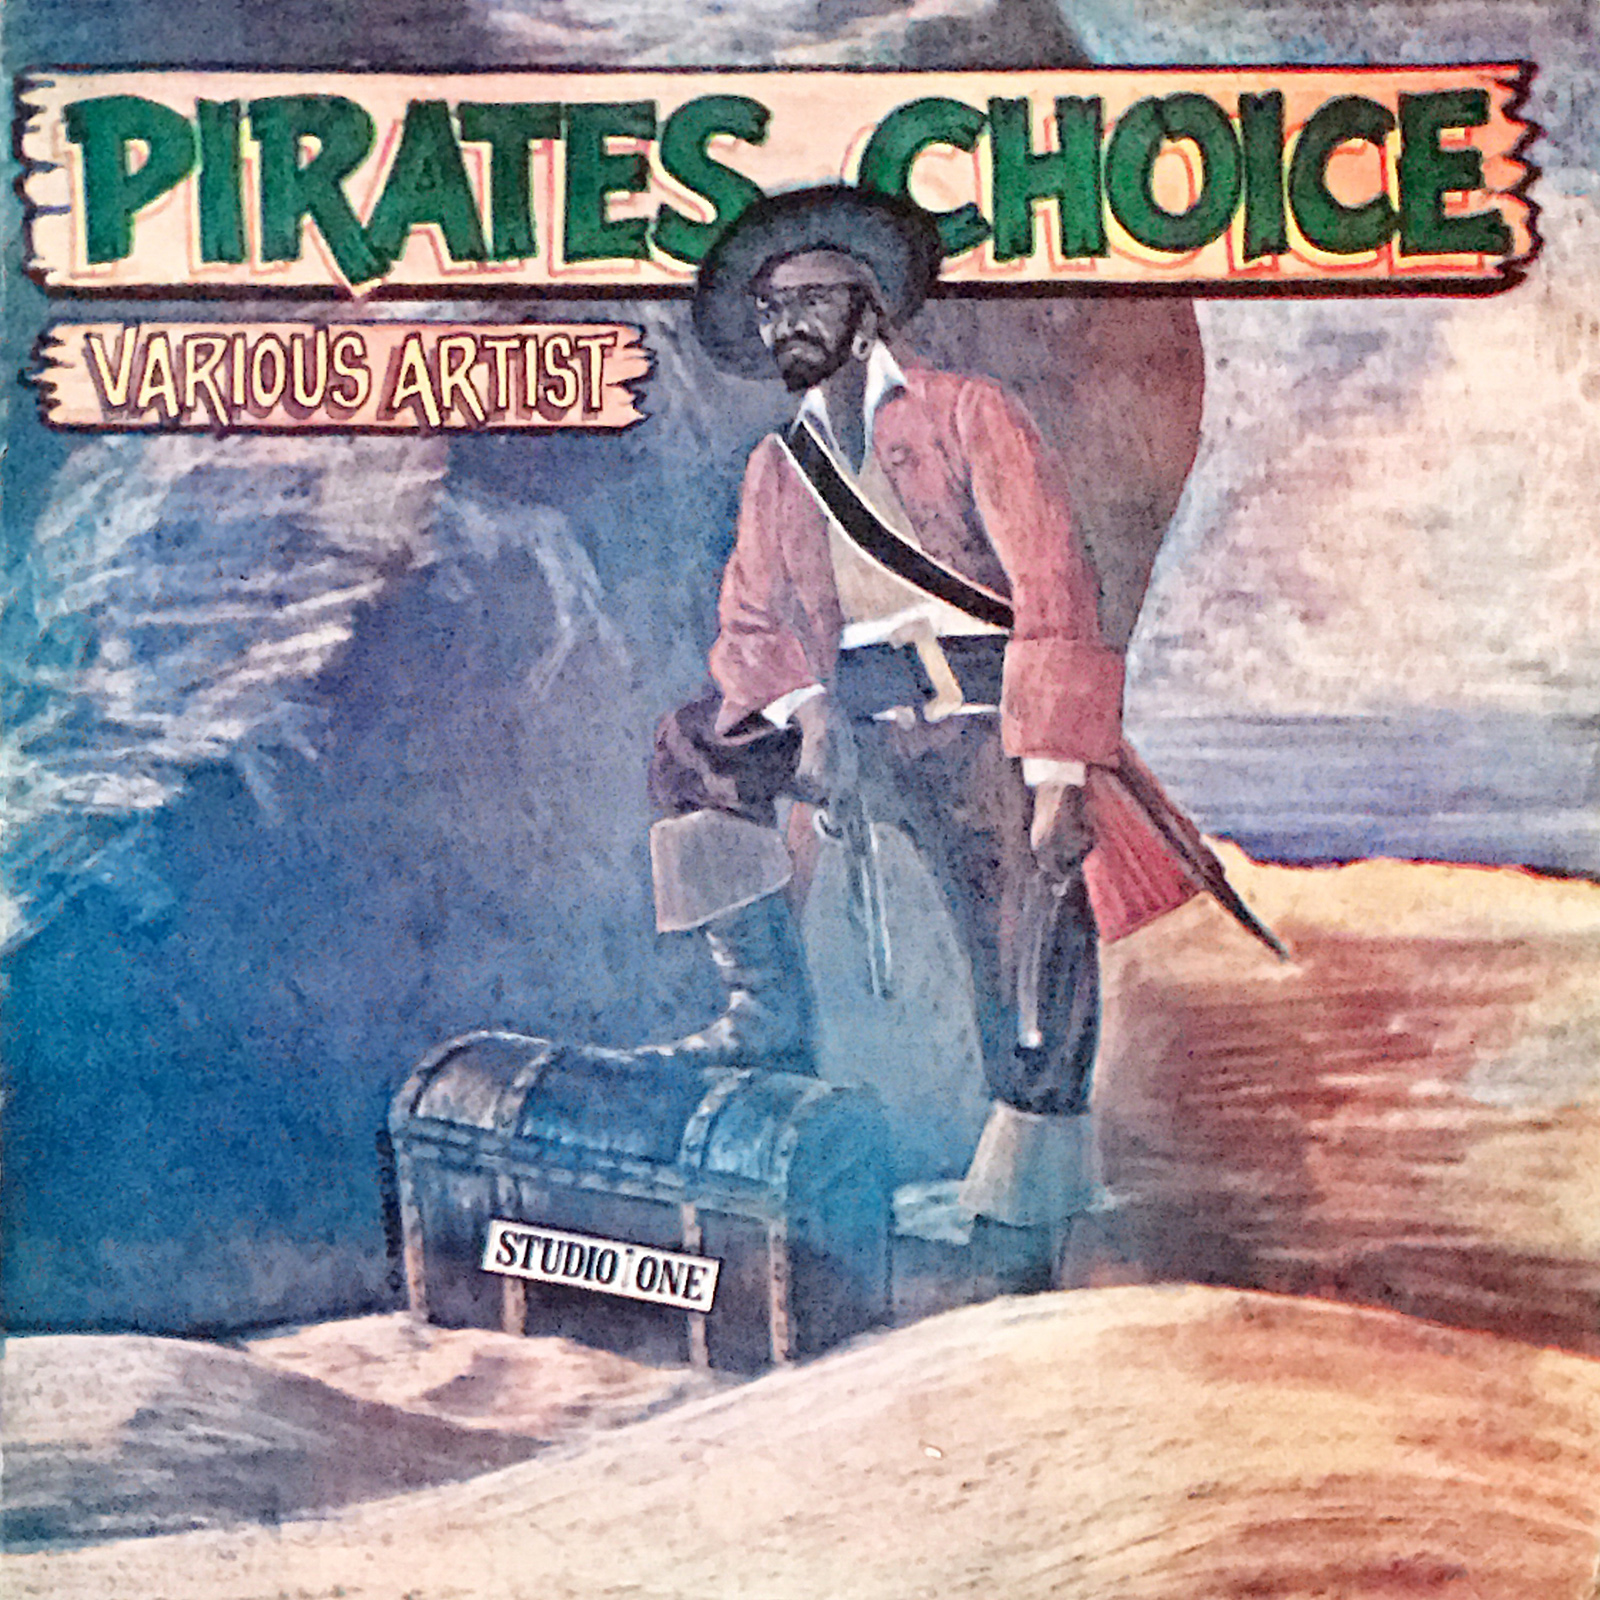 Pirates Choice』Studio Oneのナイスなコンピレーションアルバム